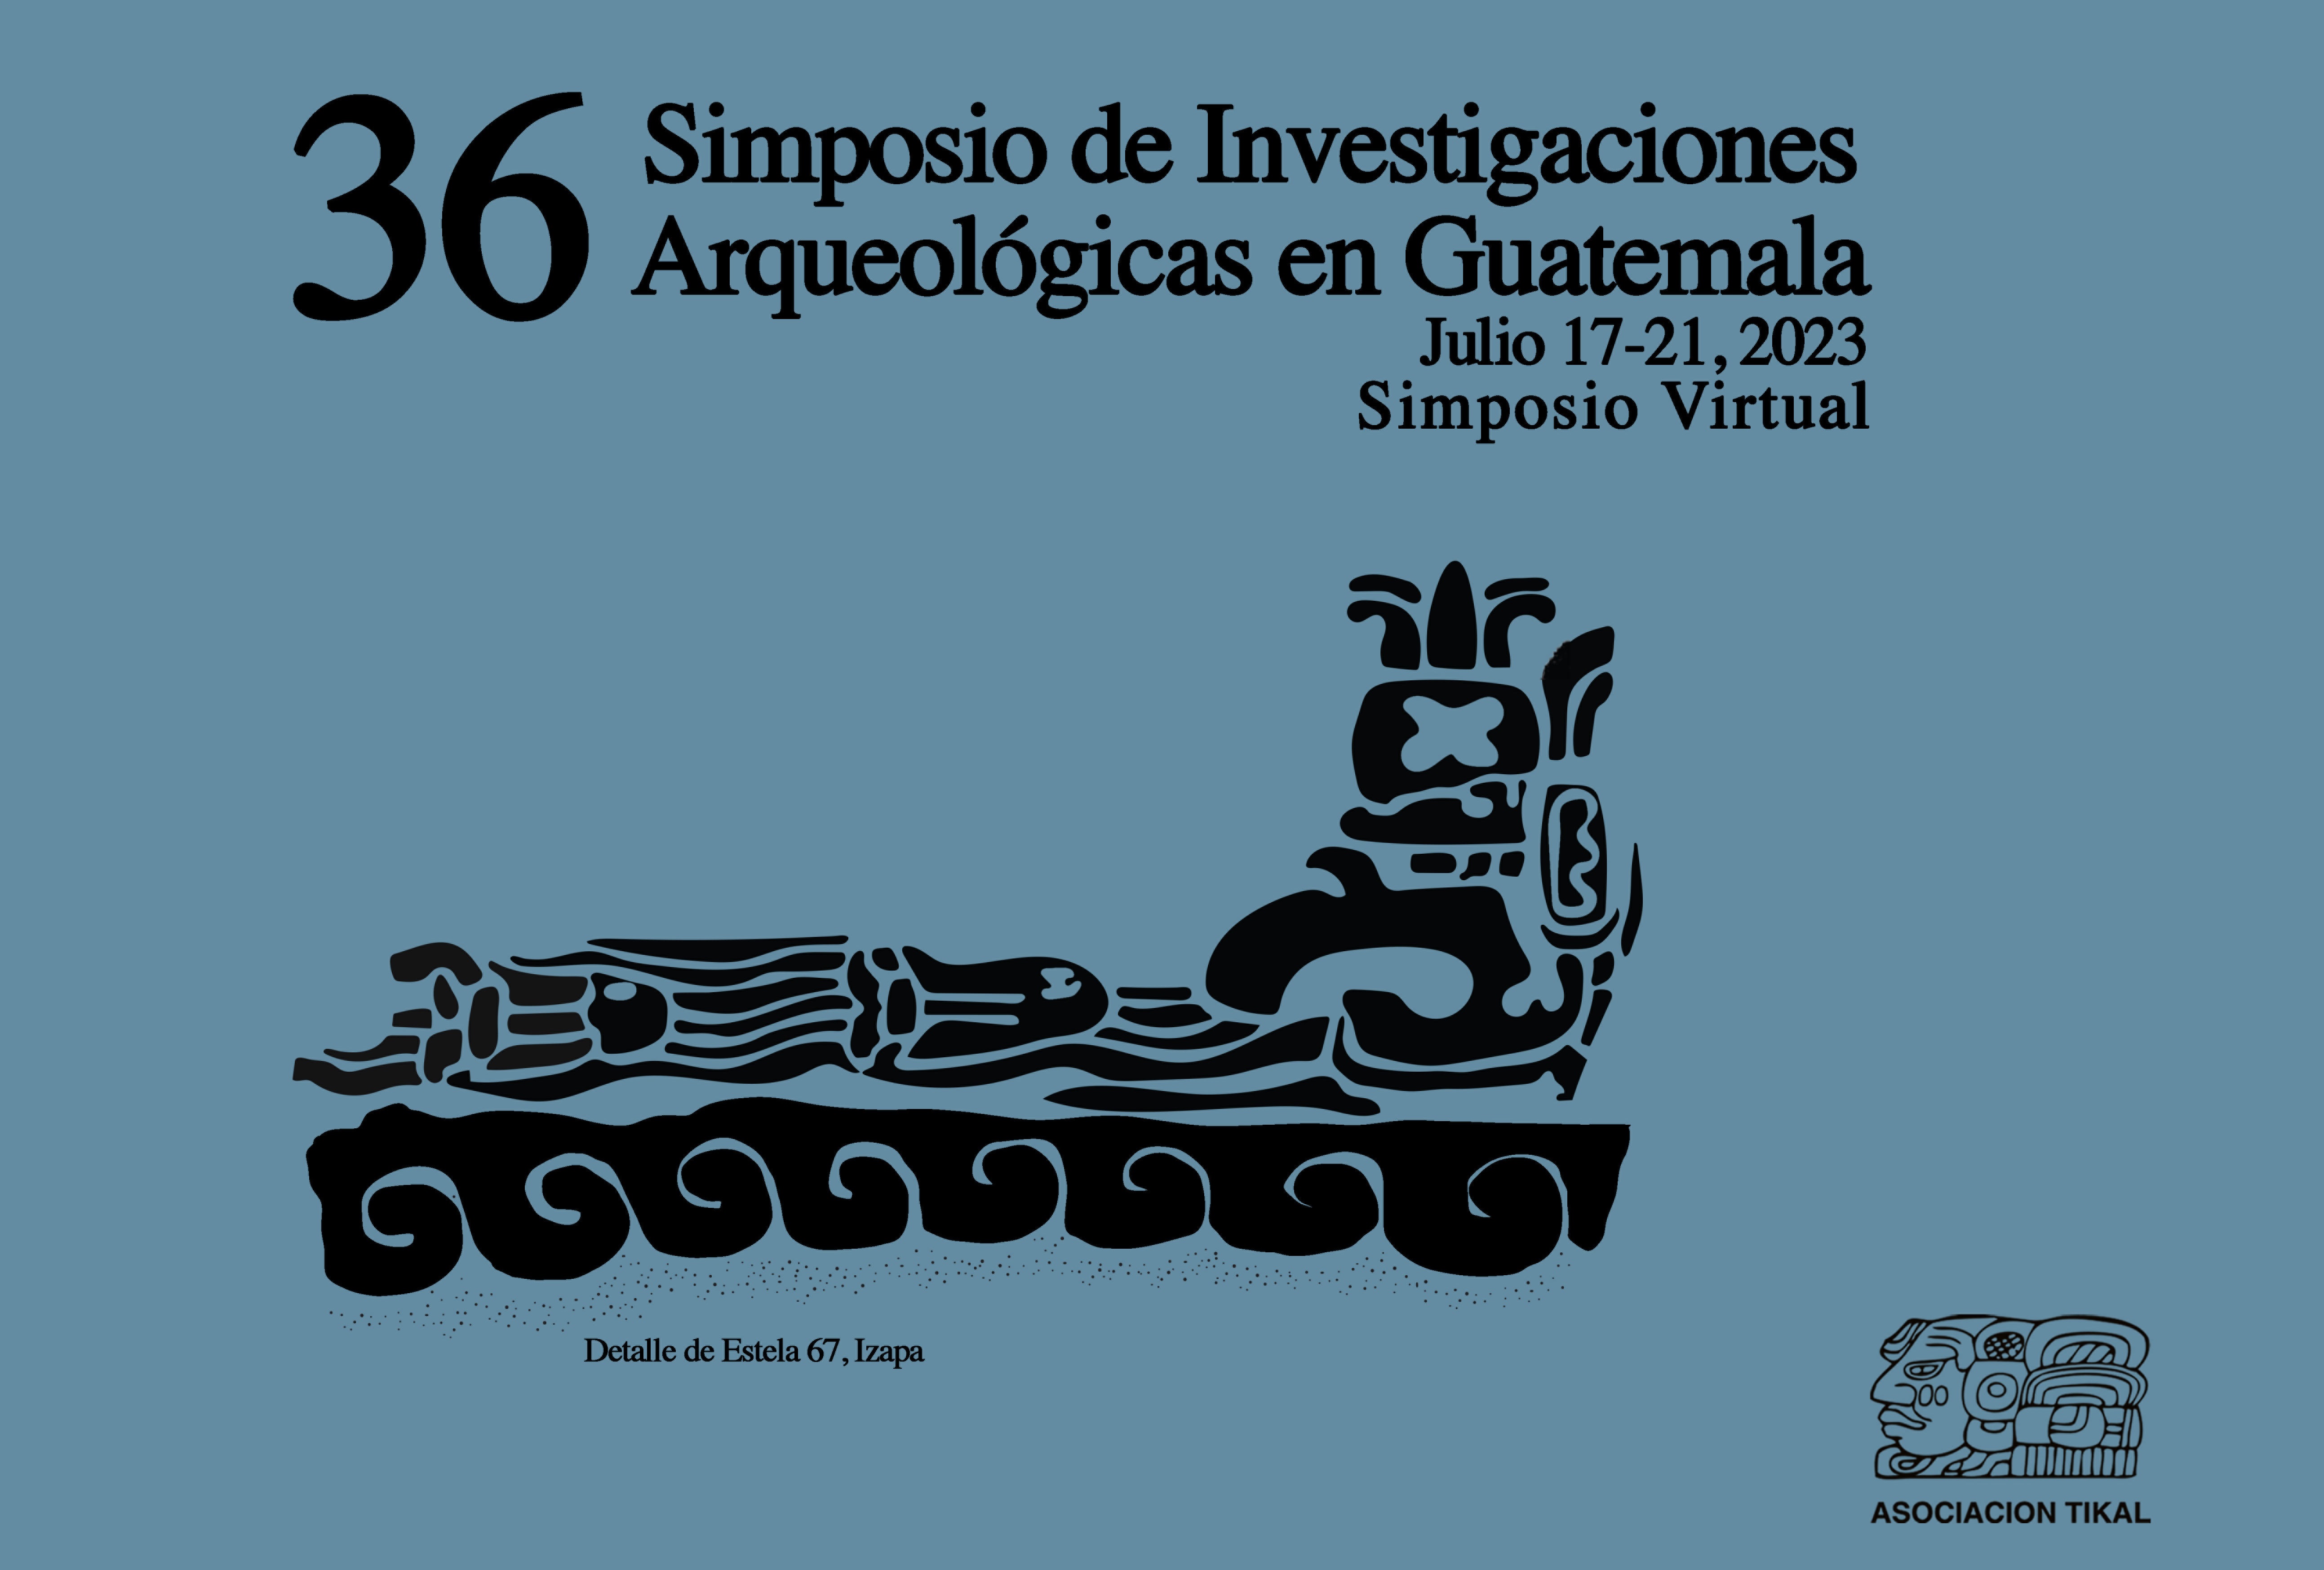 Más de 114 investigaciones arqueológicas serán presentadas en el 36 Simposio de Investigaciones Arqueológicas de Guatemala